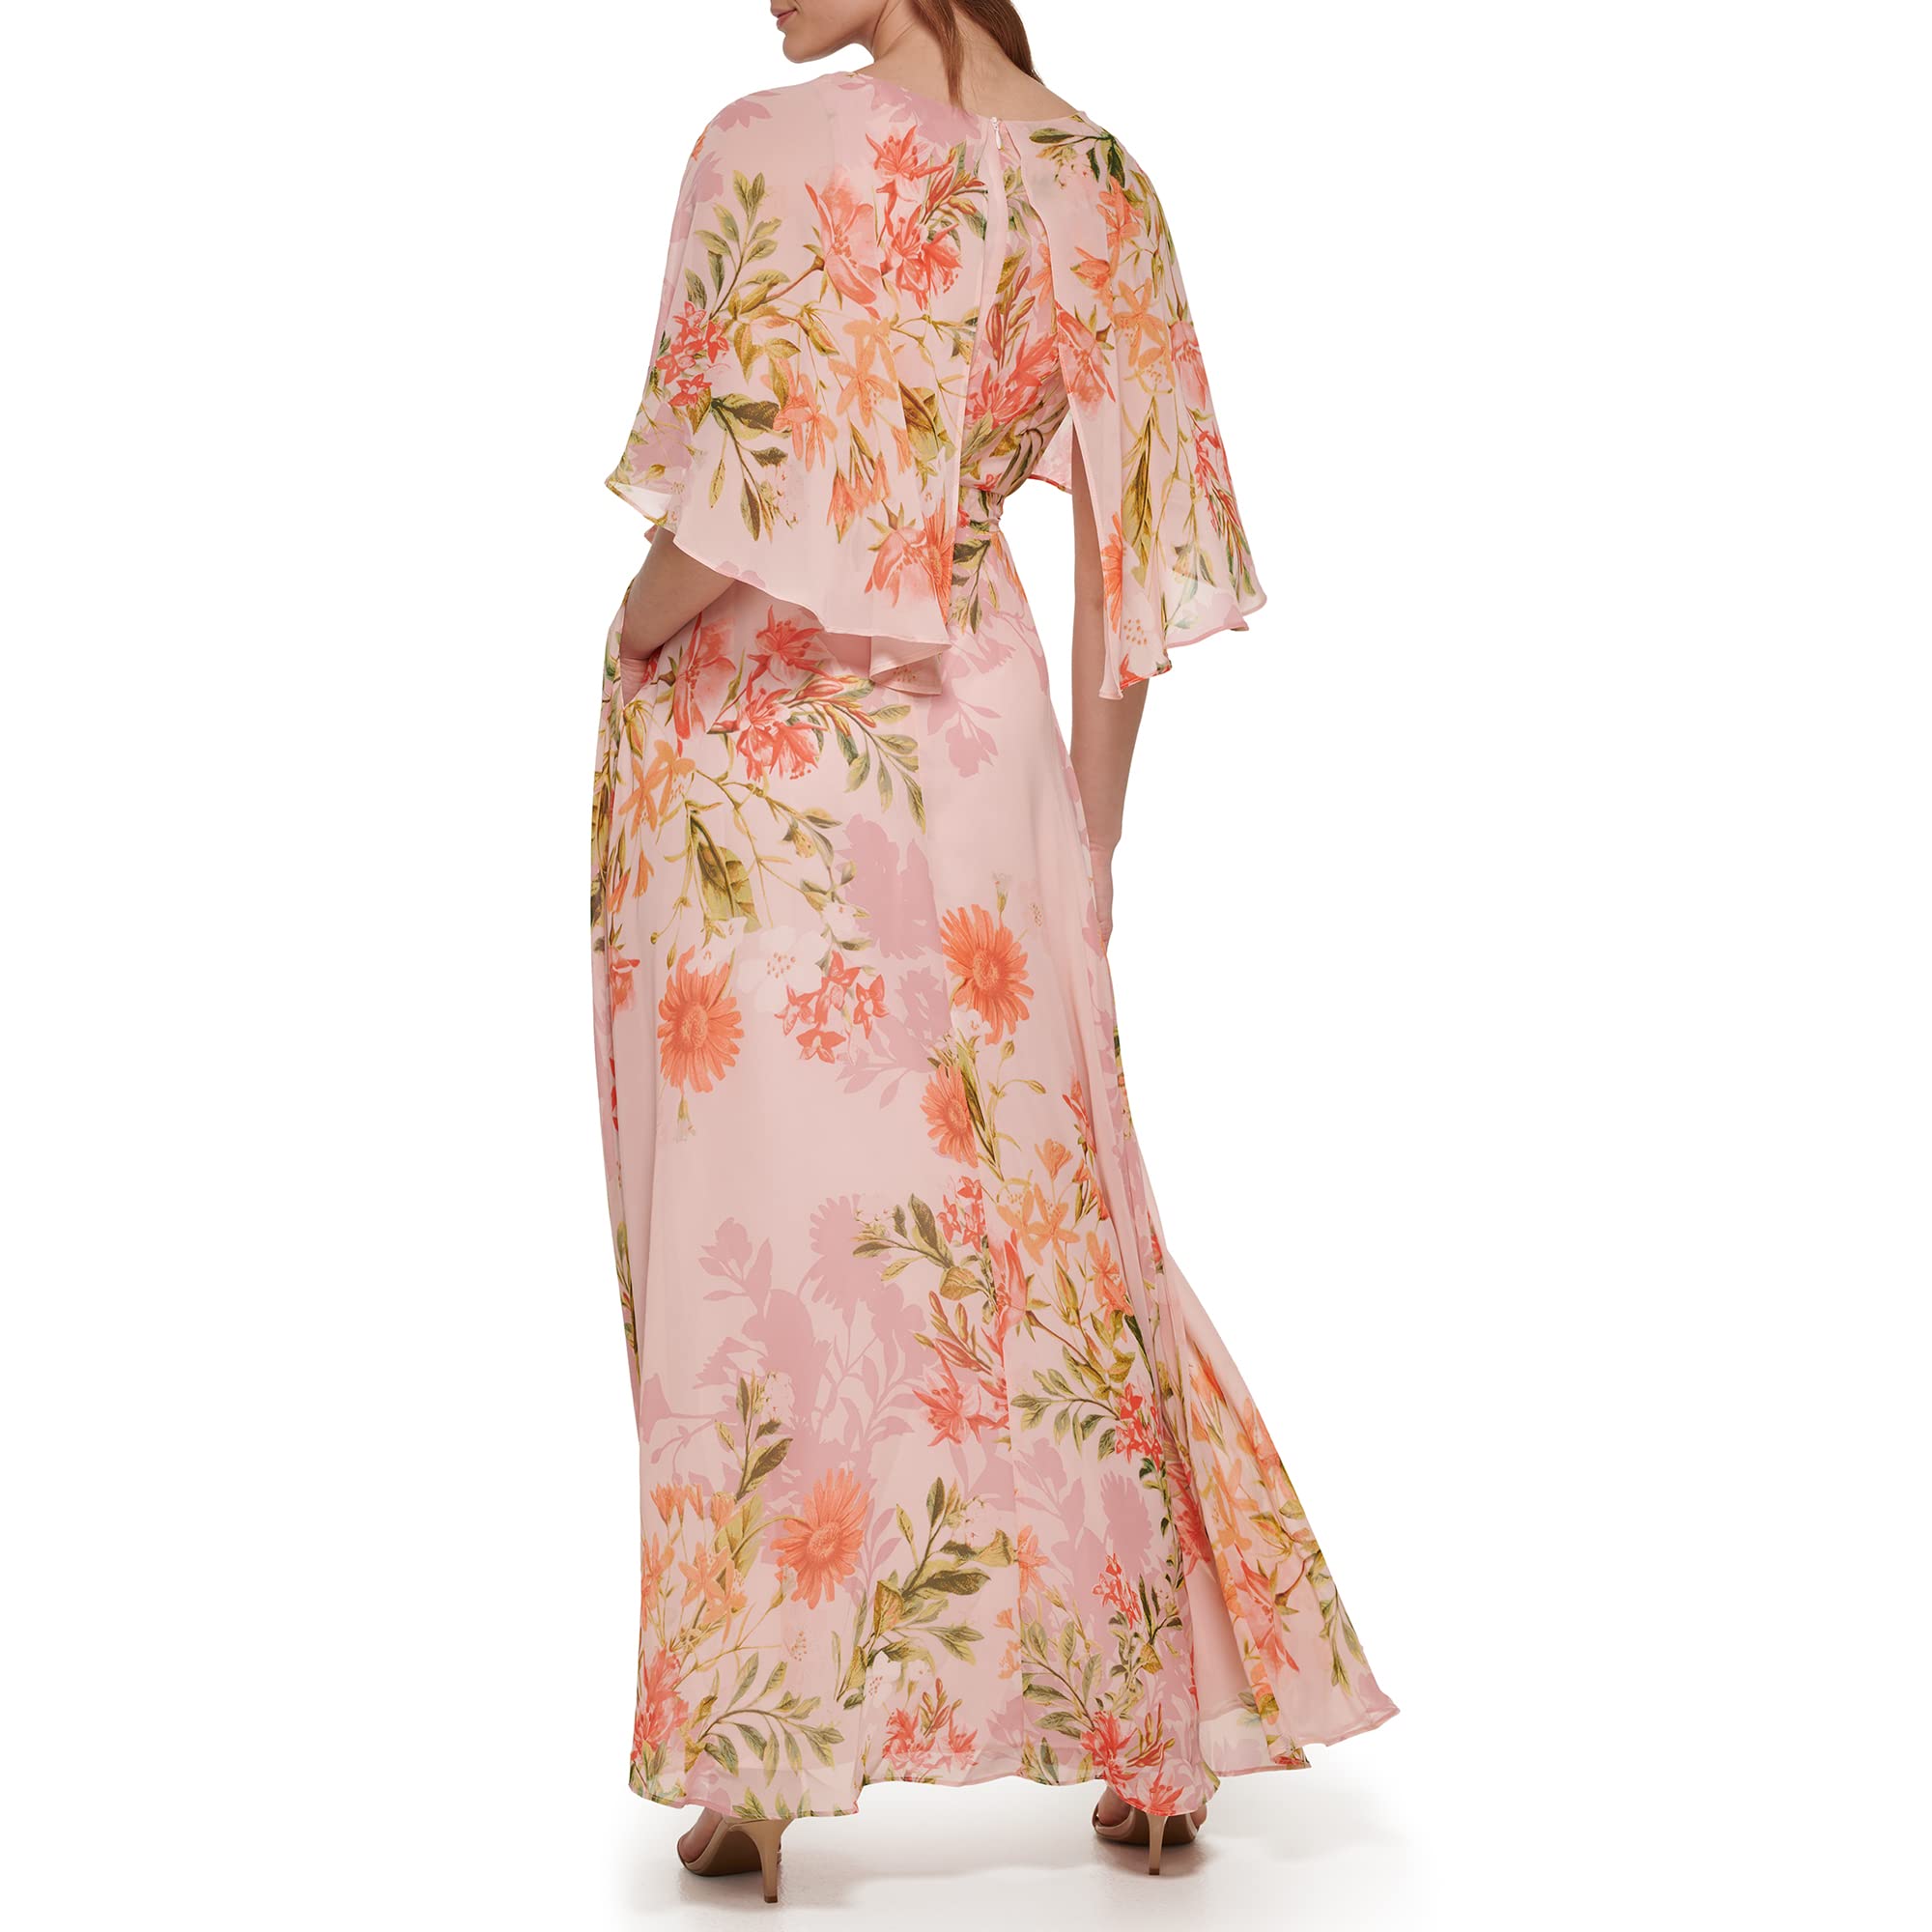 Eliza J Women's Maxi Style Caplet Chiffon Elbow Sleeve Jewel Neck Dress